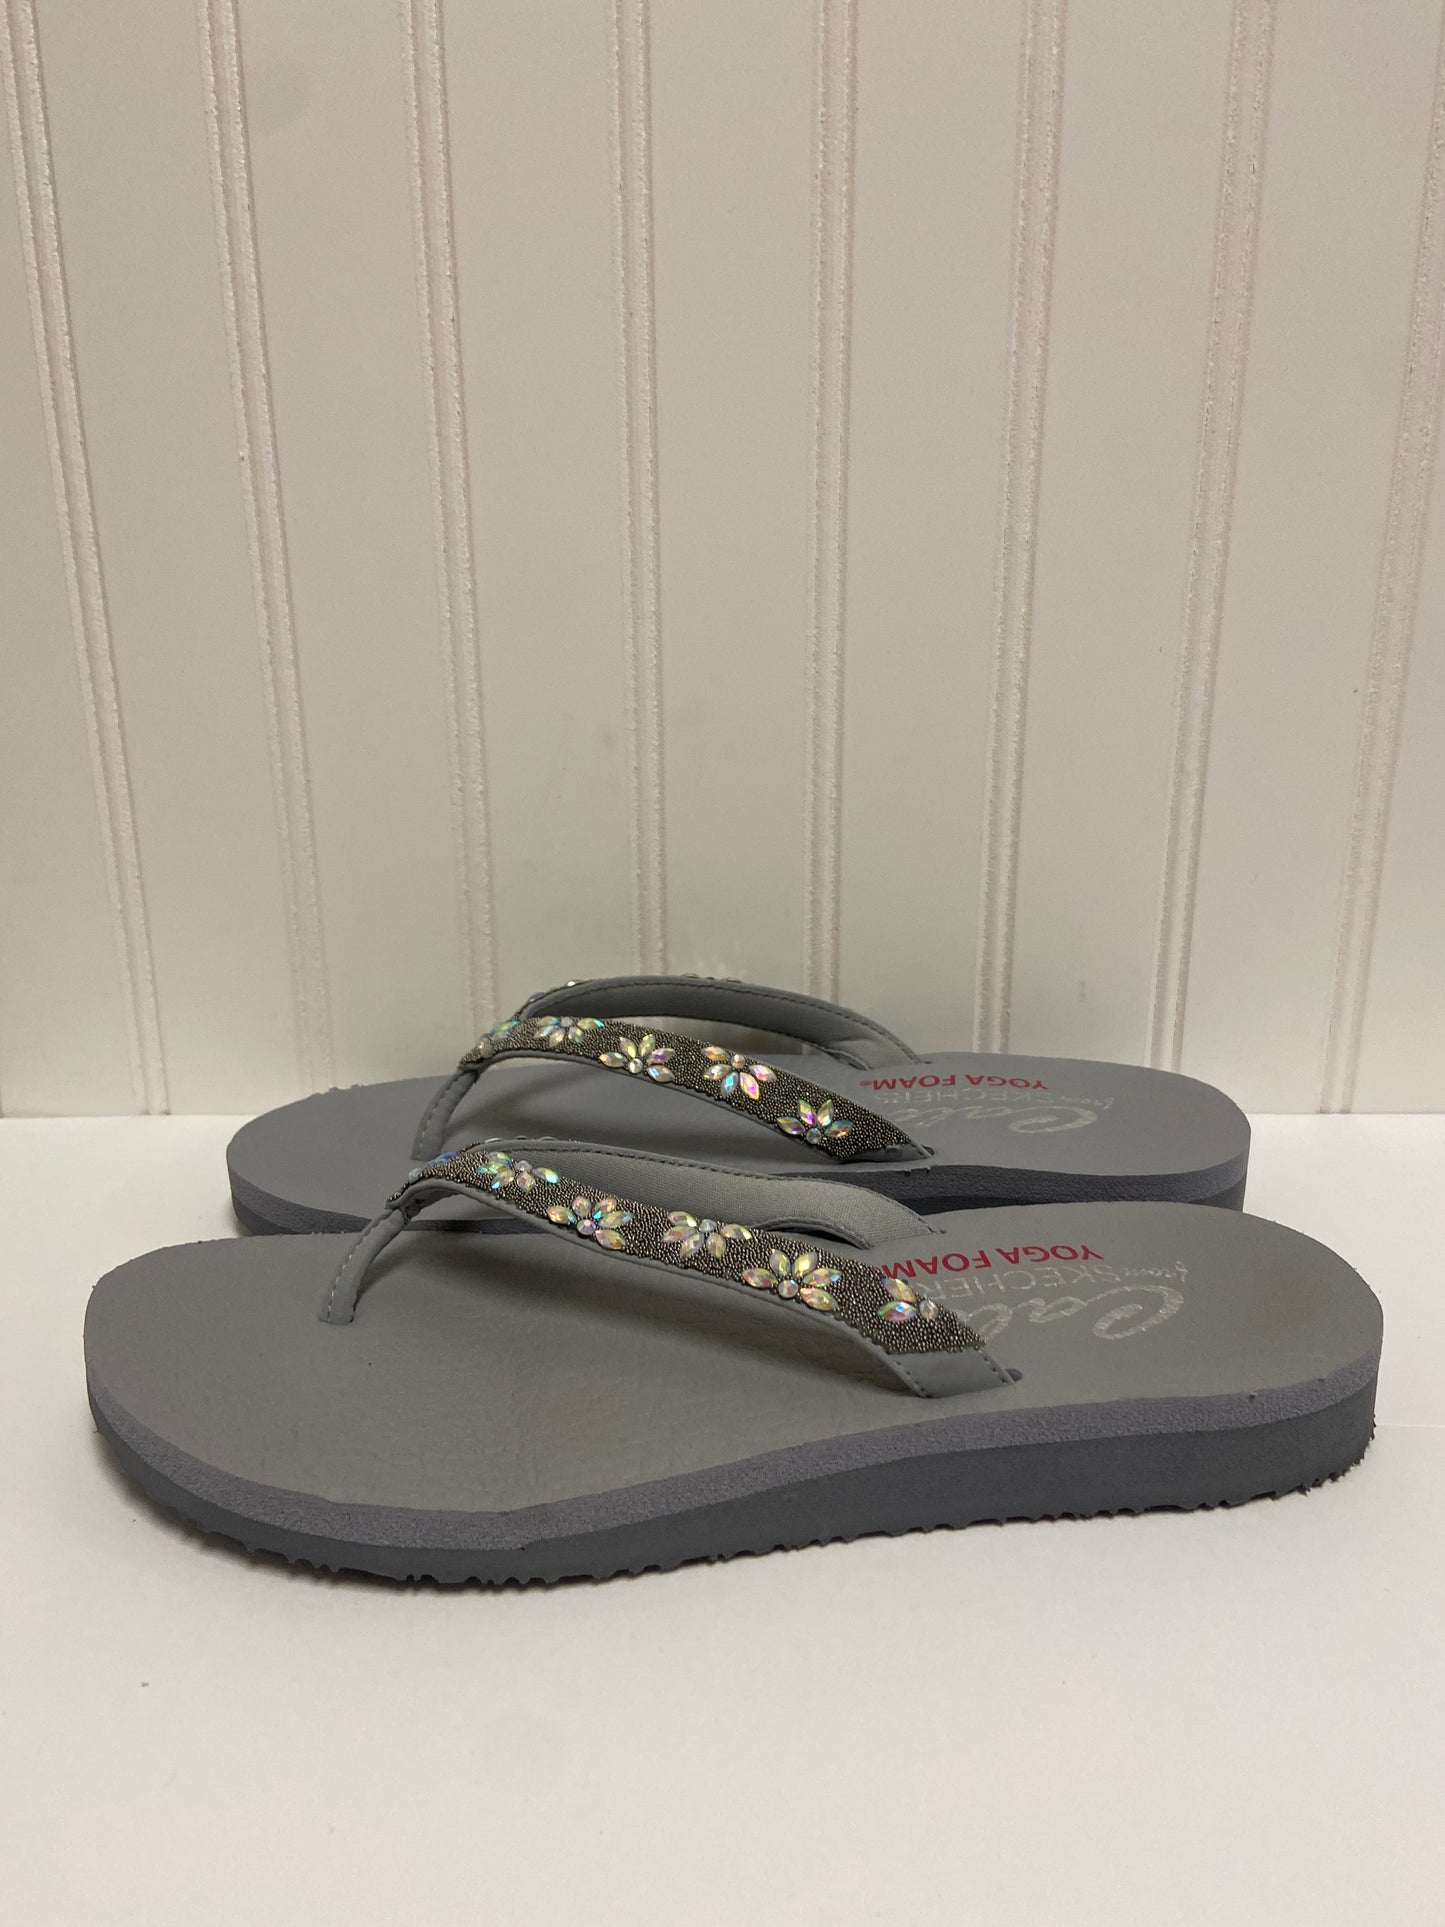 Sandals Flip Flops By Skechers  Size: 8.5